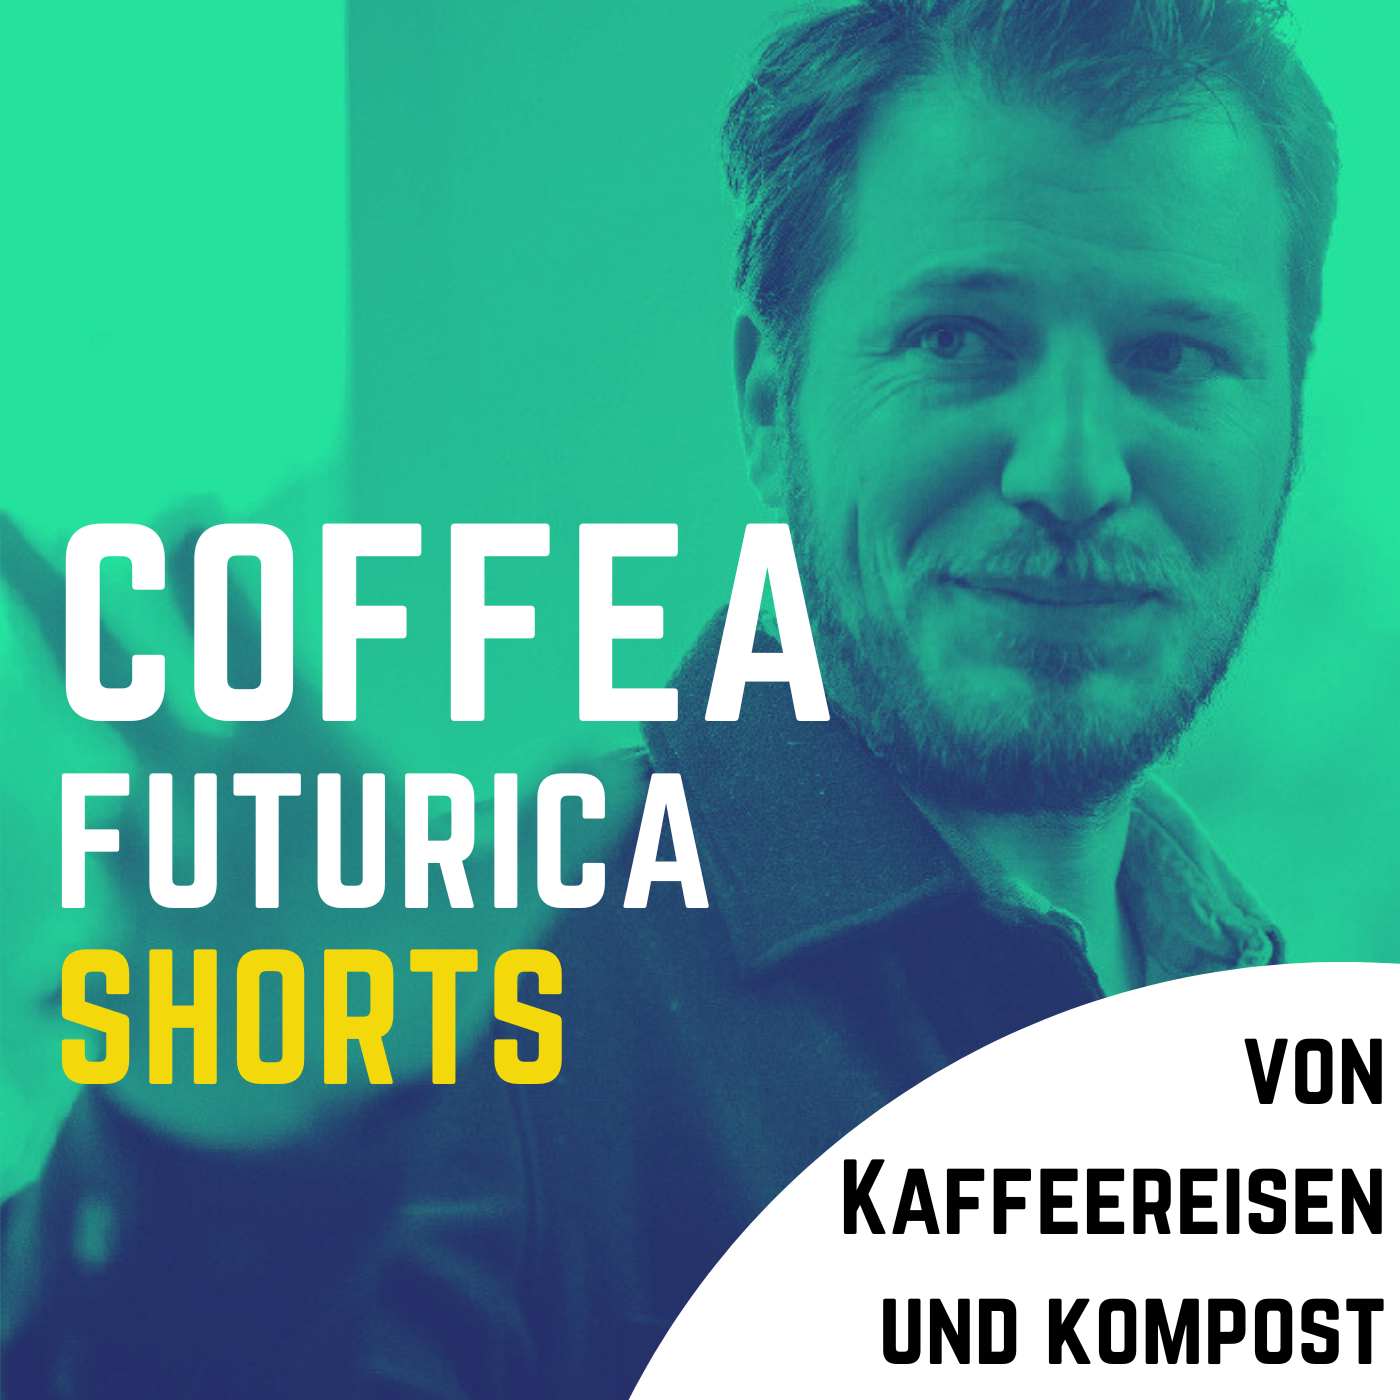 Coffea Futurica Short: Kaffeereisen, Kompost und Loyalität